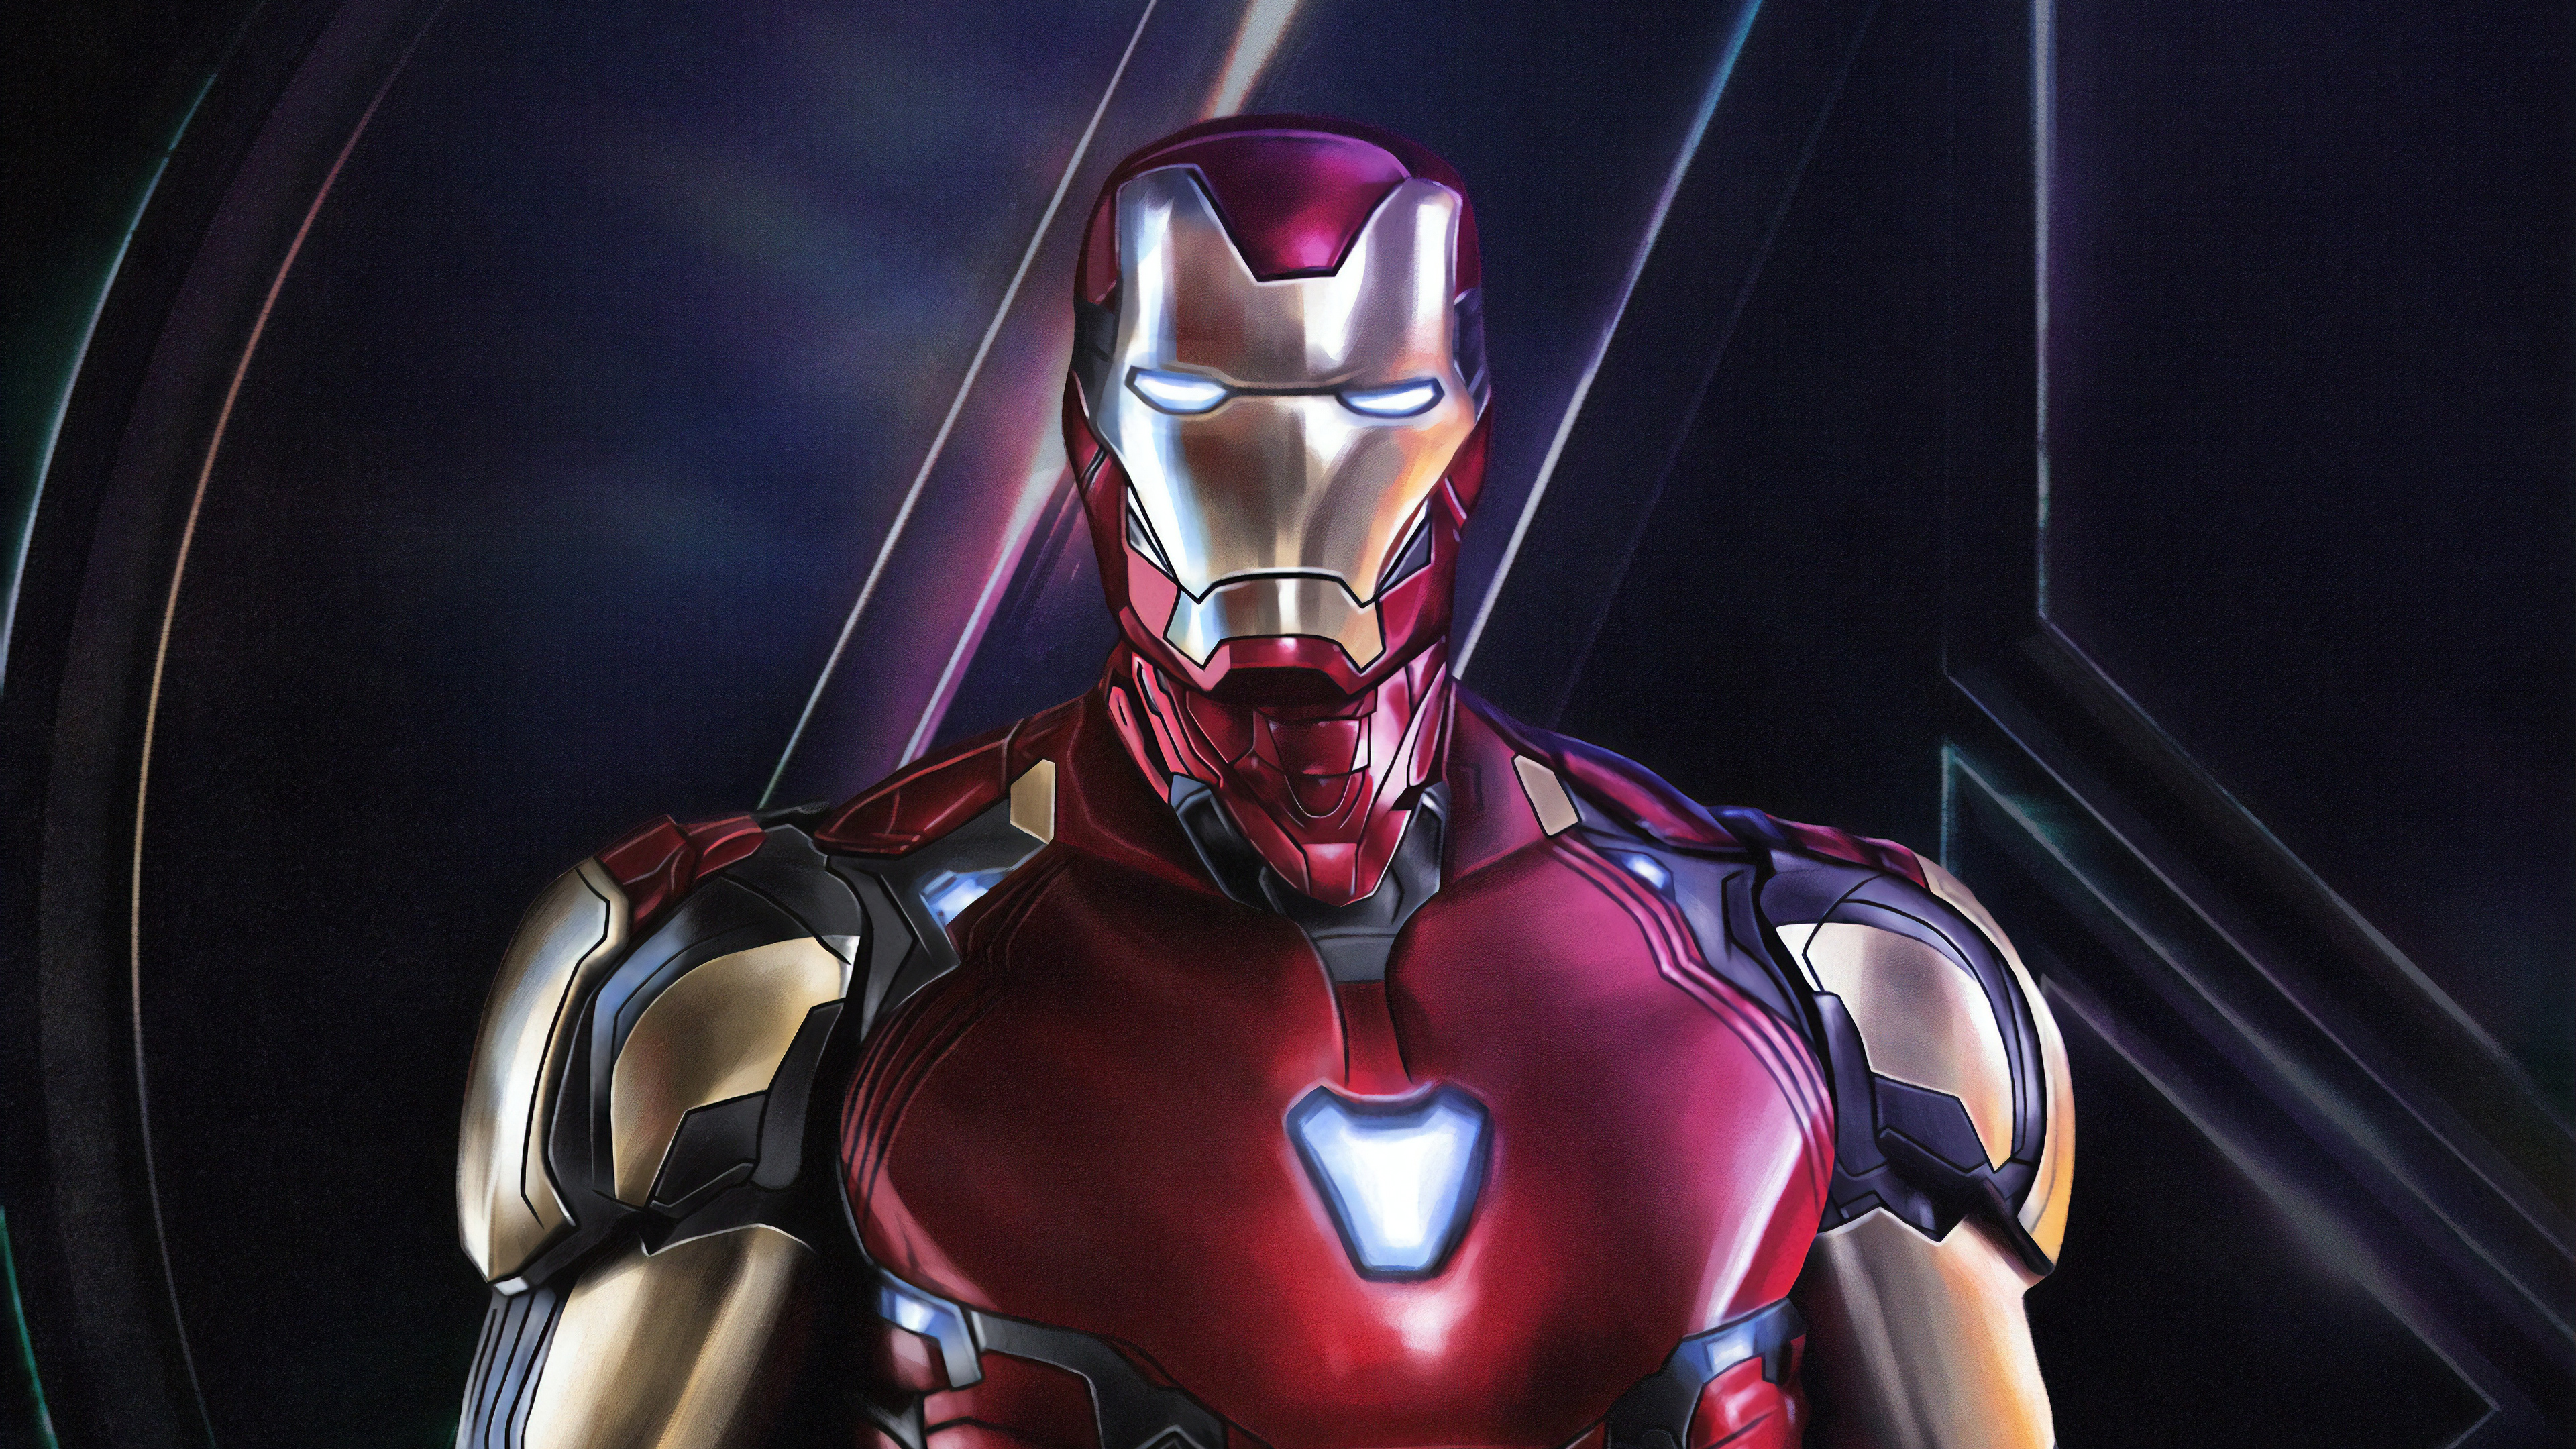 Hình nền Iron Man HD miễn phí là lựa chọn tuyệt vời cho những fan của siêu anh hùng này. Với chất lượng hình ảnh tuyệt vời, những bức ảnh nền Iron Man thật sự đẹp mắt và sáng tạo. Bạn có thể tải về miễn phí những hình nền Iron Man HD này để tùy chỉnh cho màn hình điện thoại hay máy tính của mình.